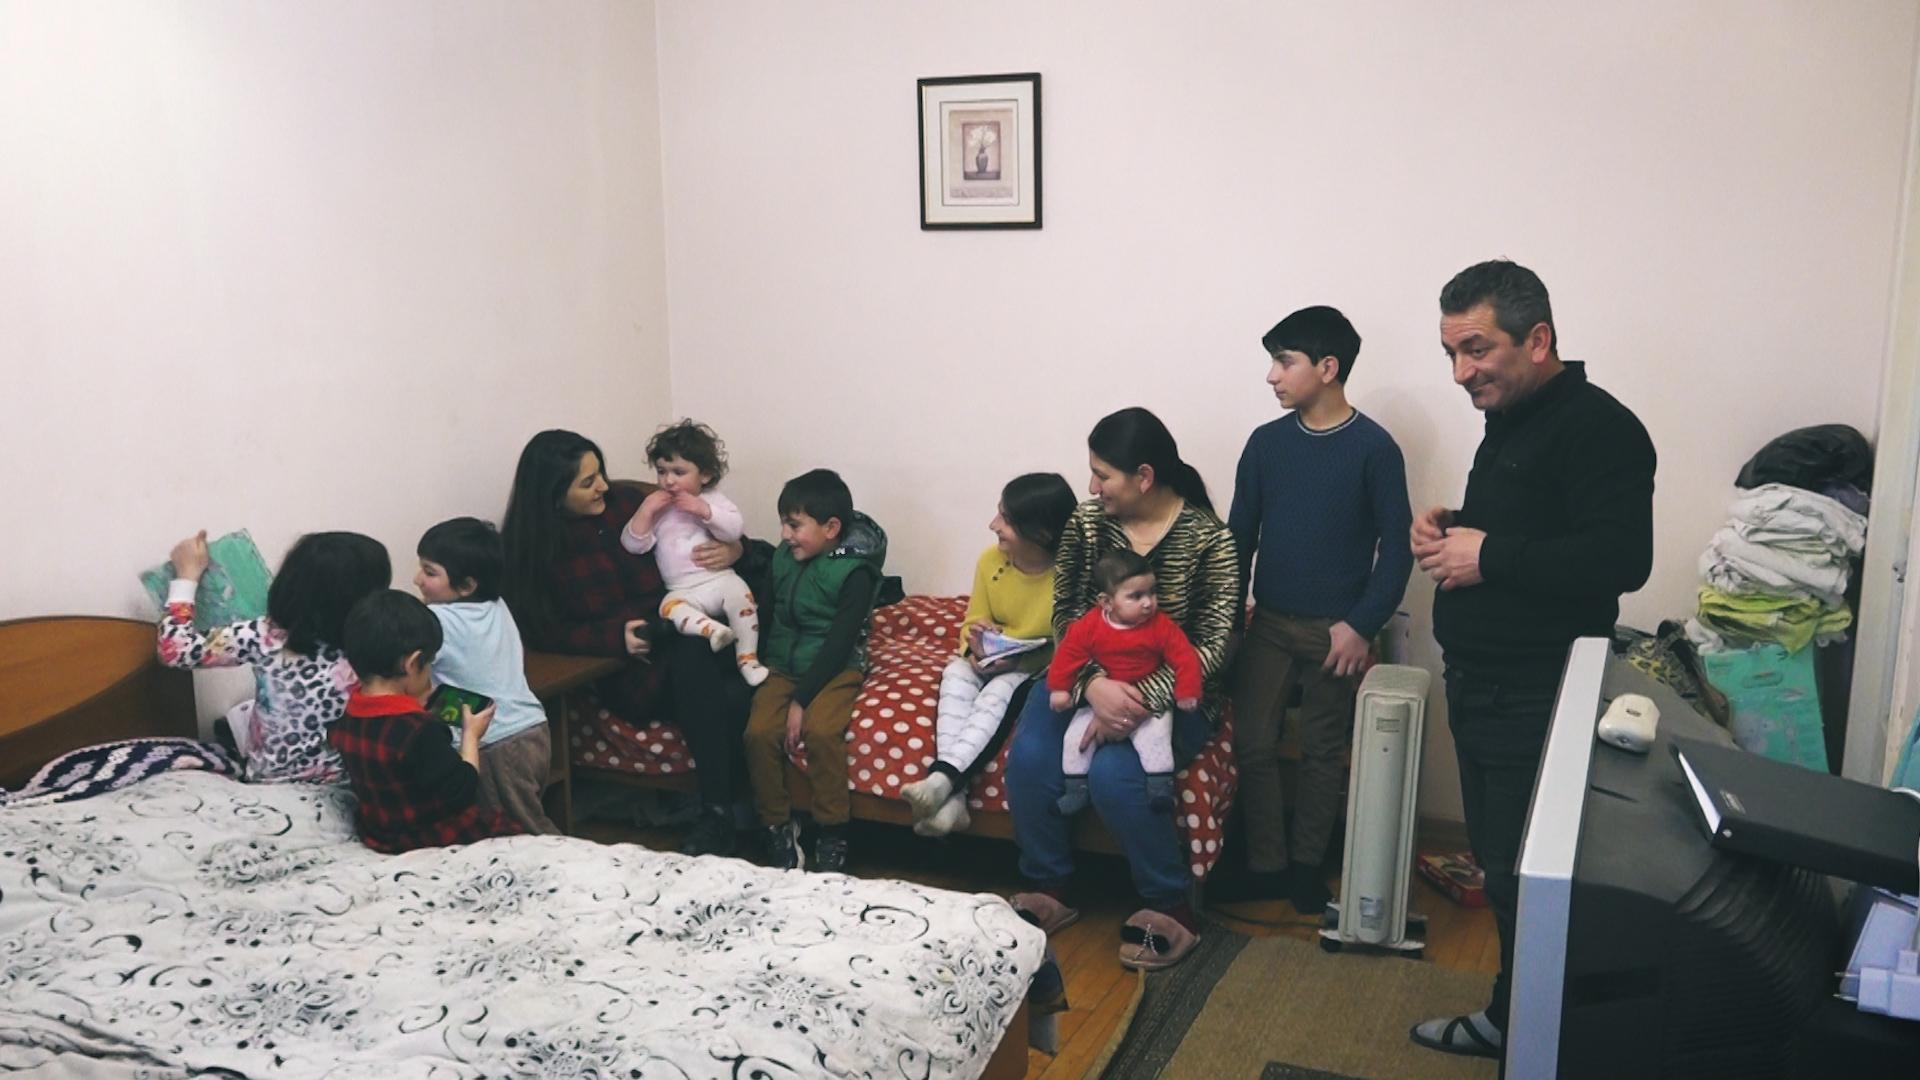 Ստեփանակերտ․ կրկնակի փախստականը՝ տասը երեխաներով երկու սենյակում